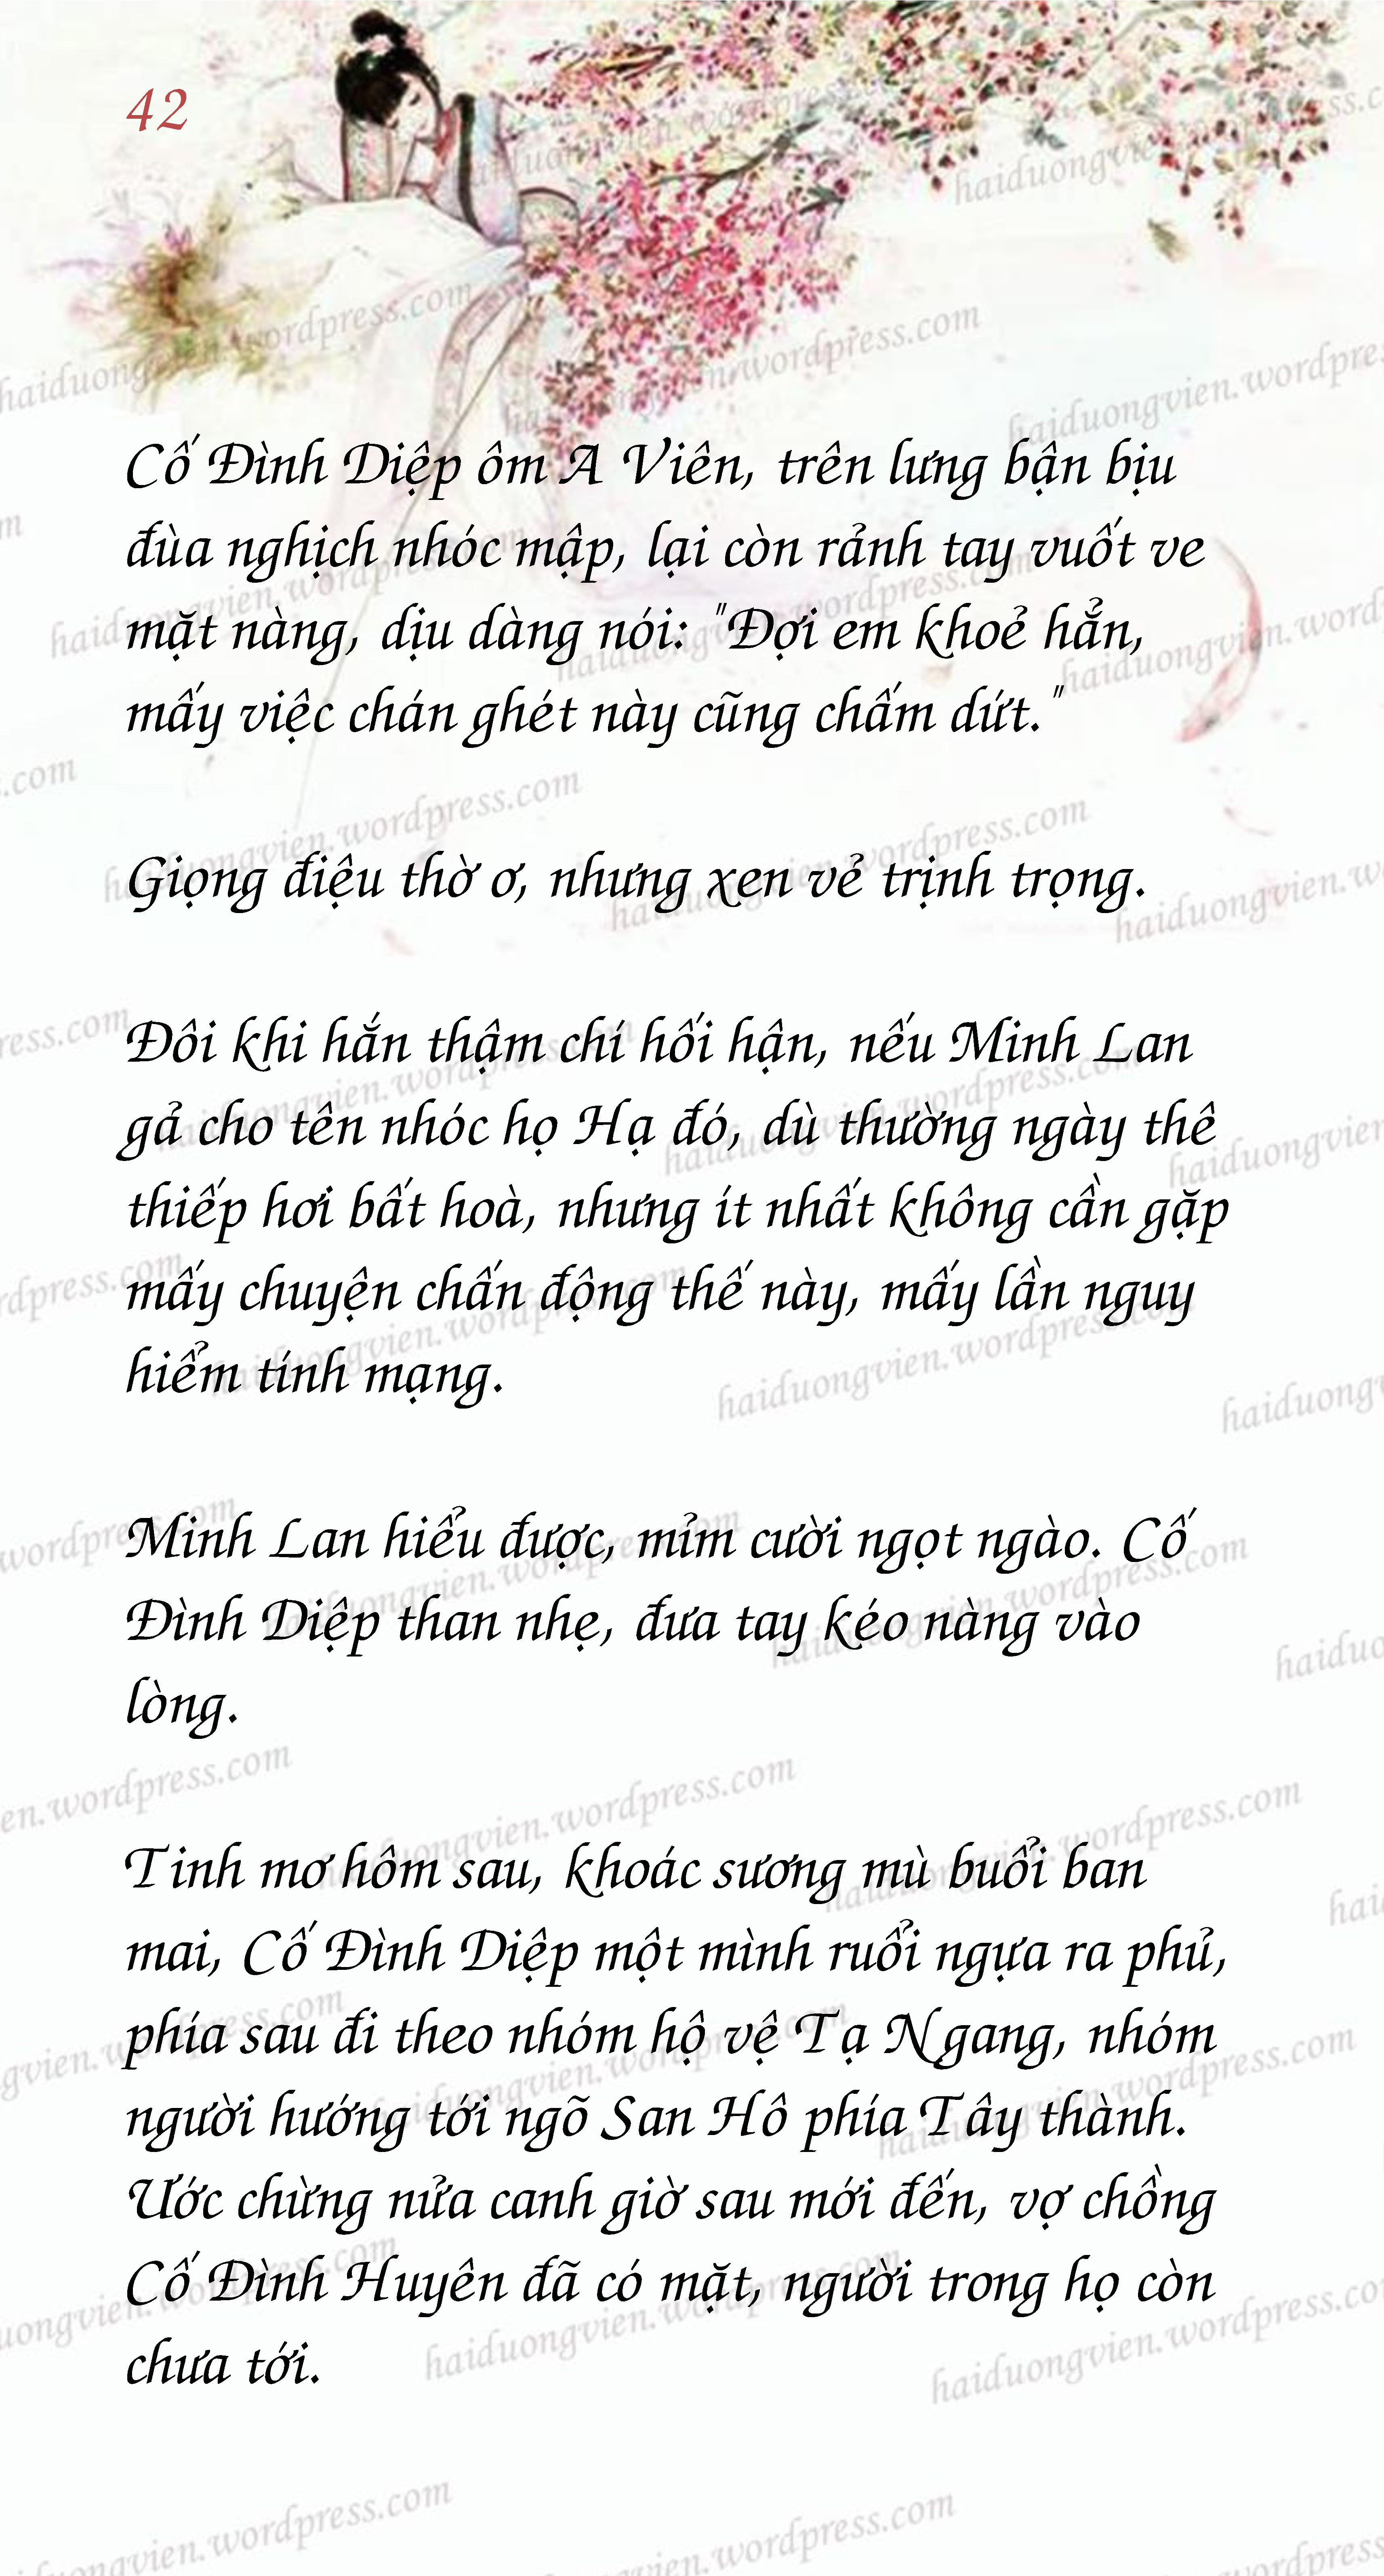 Mau_Page42